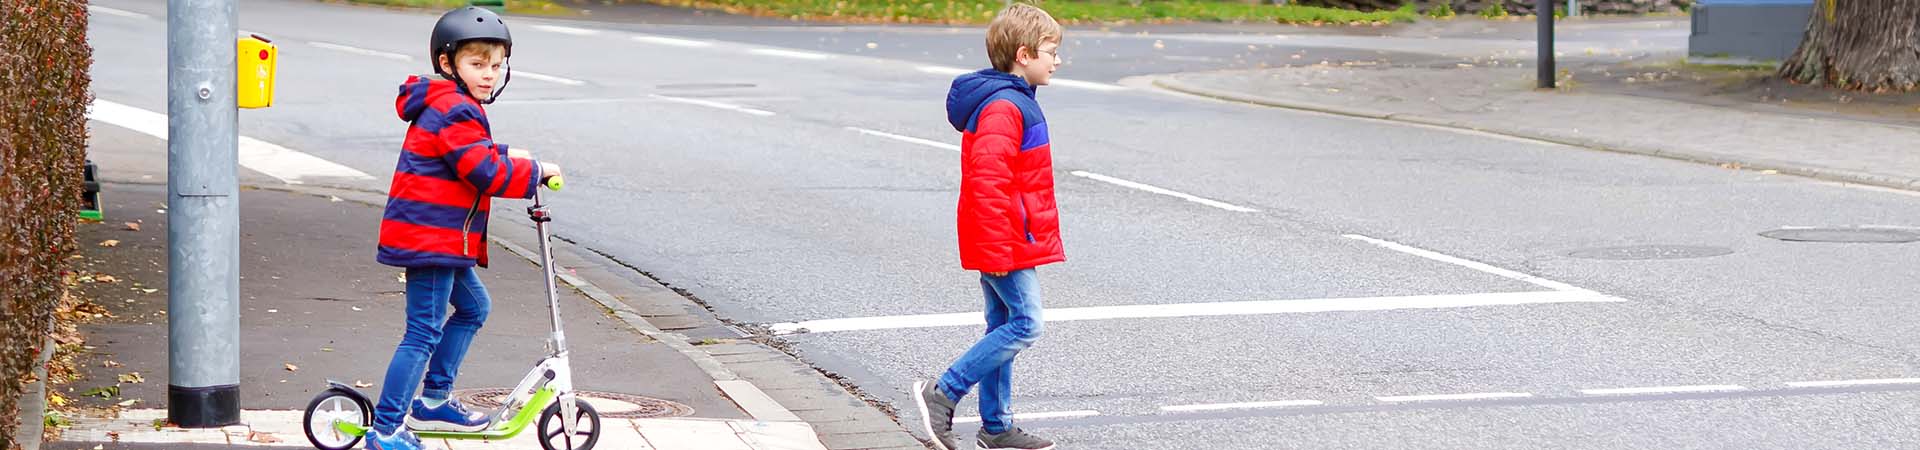 Dos niños cruzan la calle por un paso de peatones